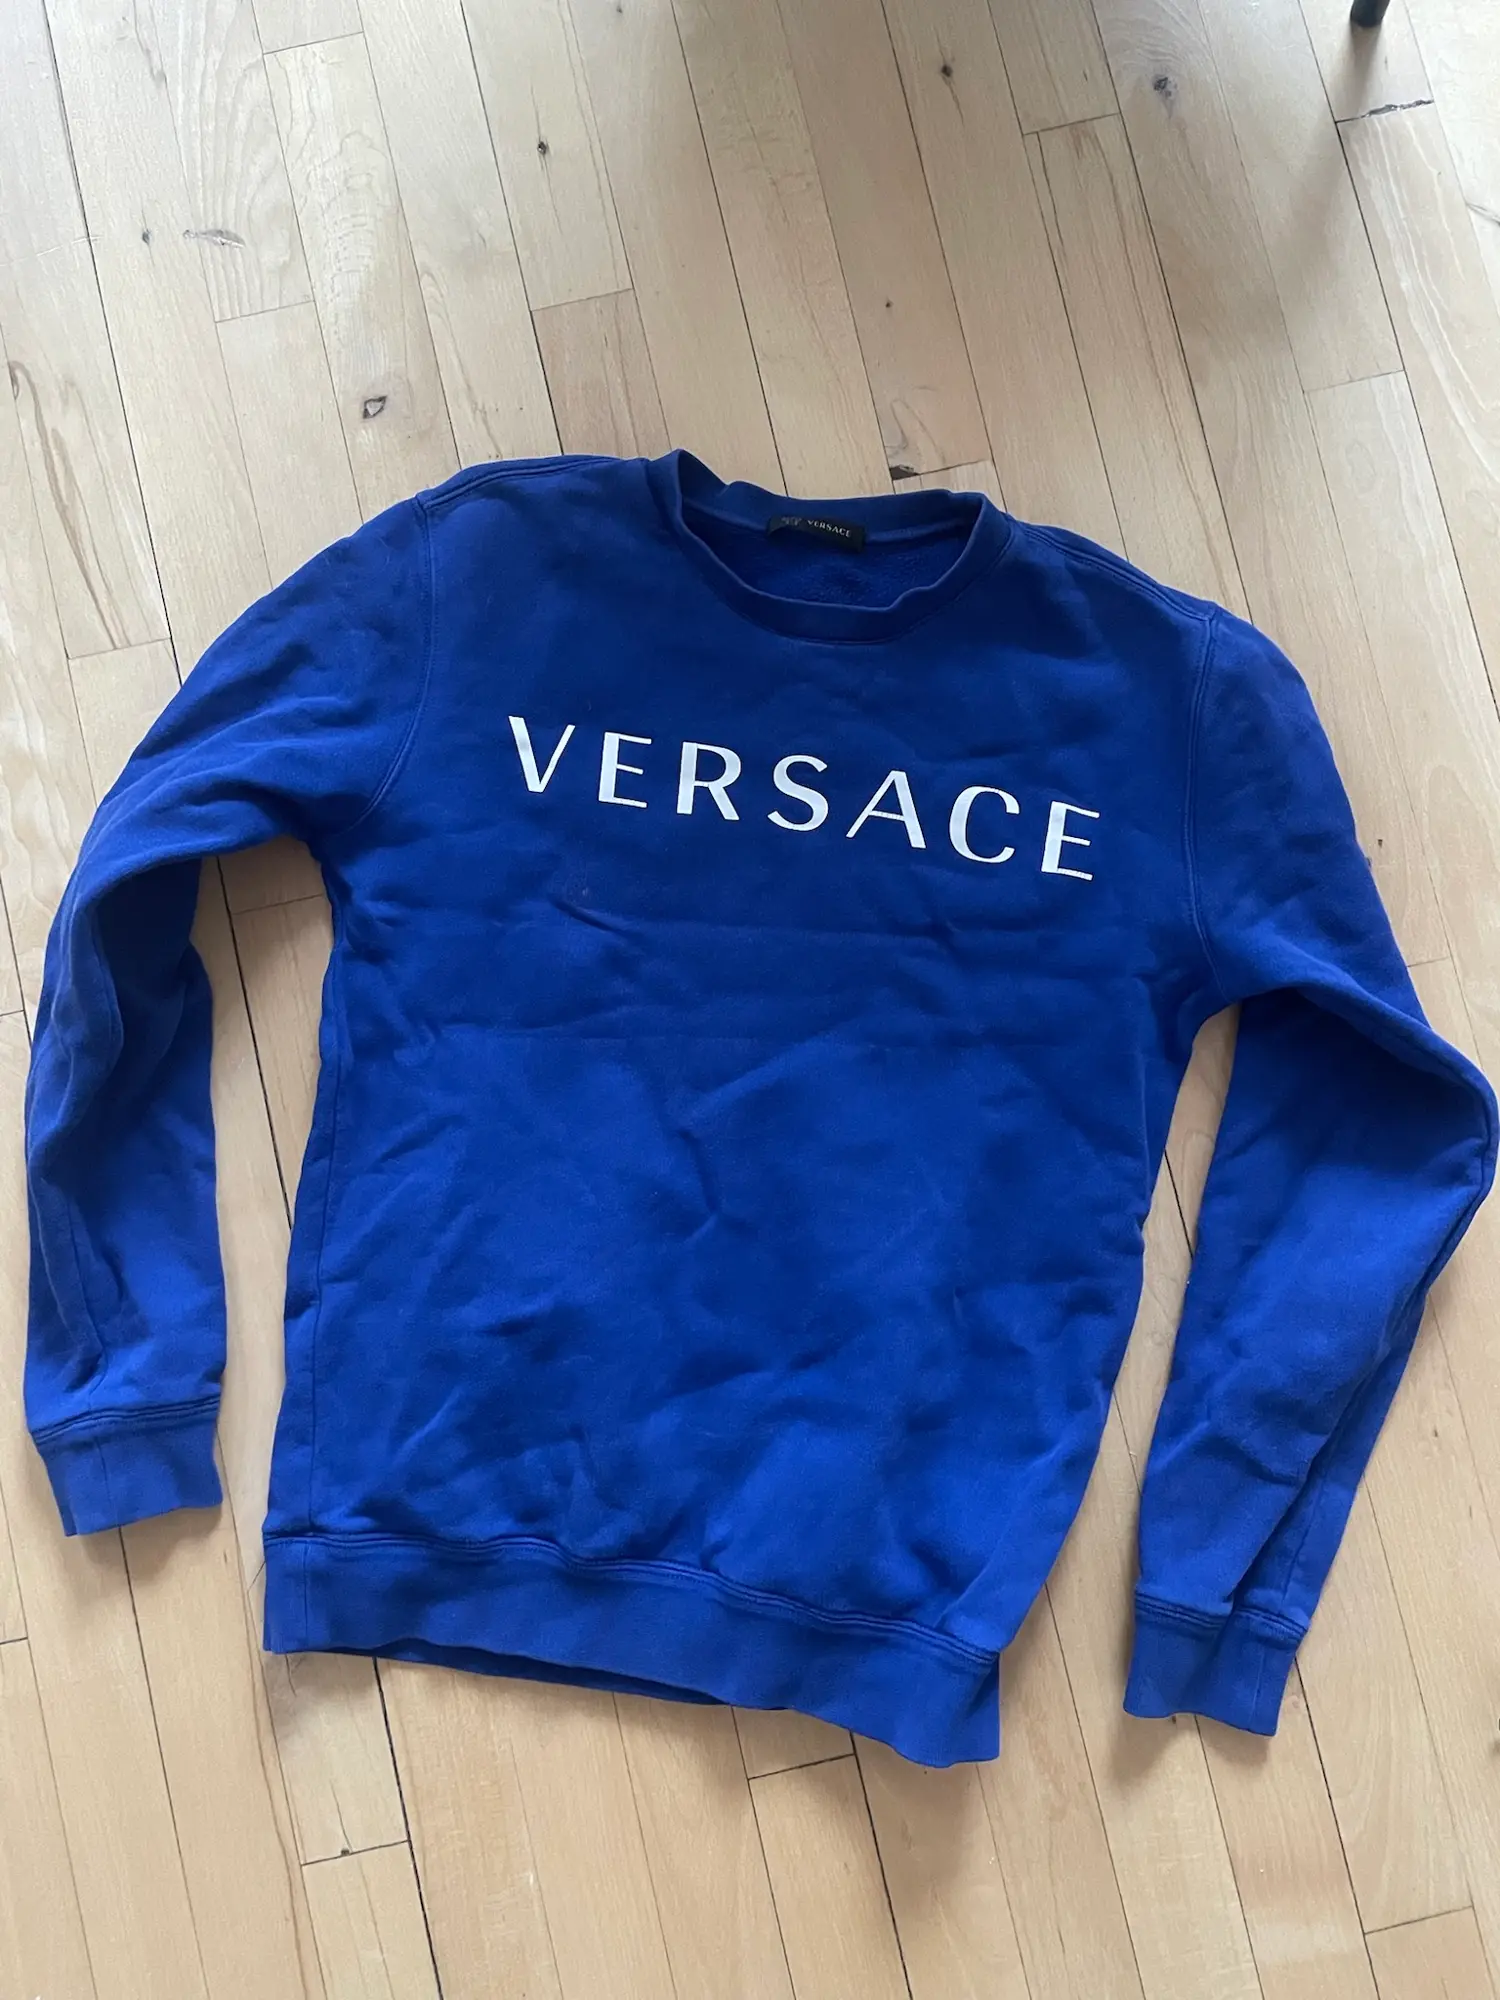 Versace sweatshirt